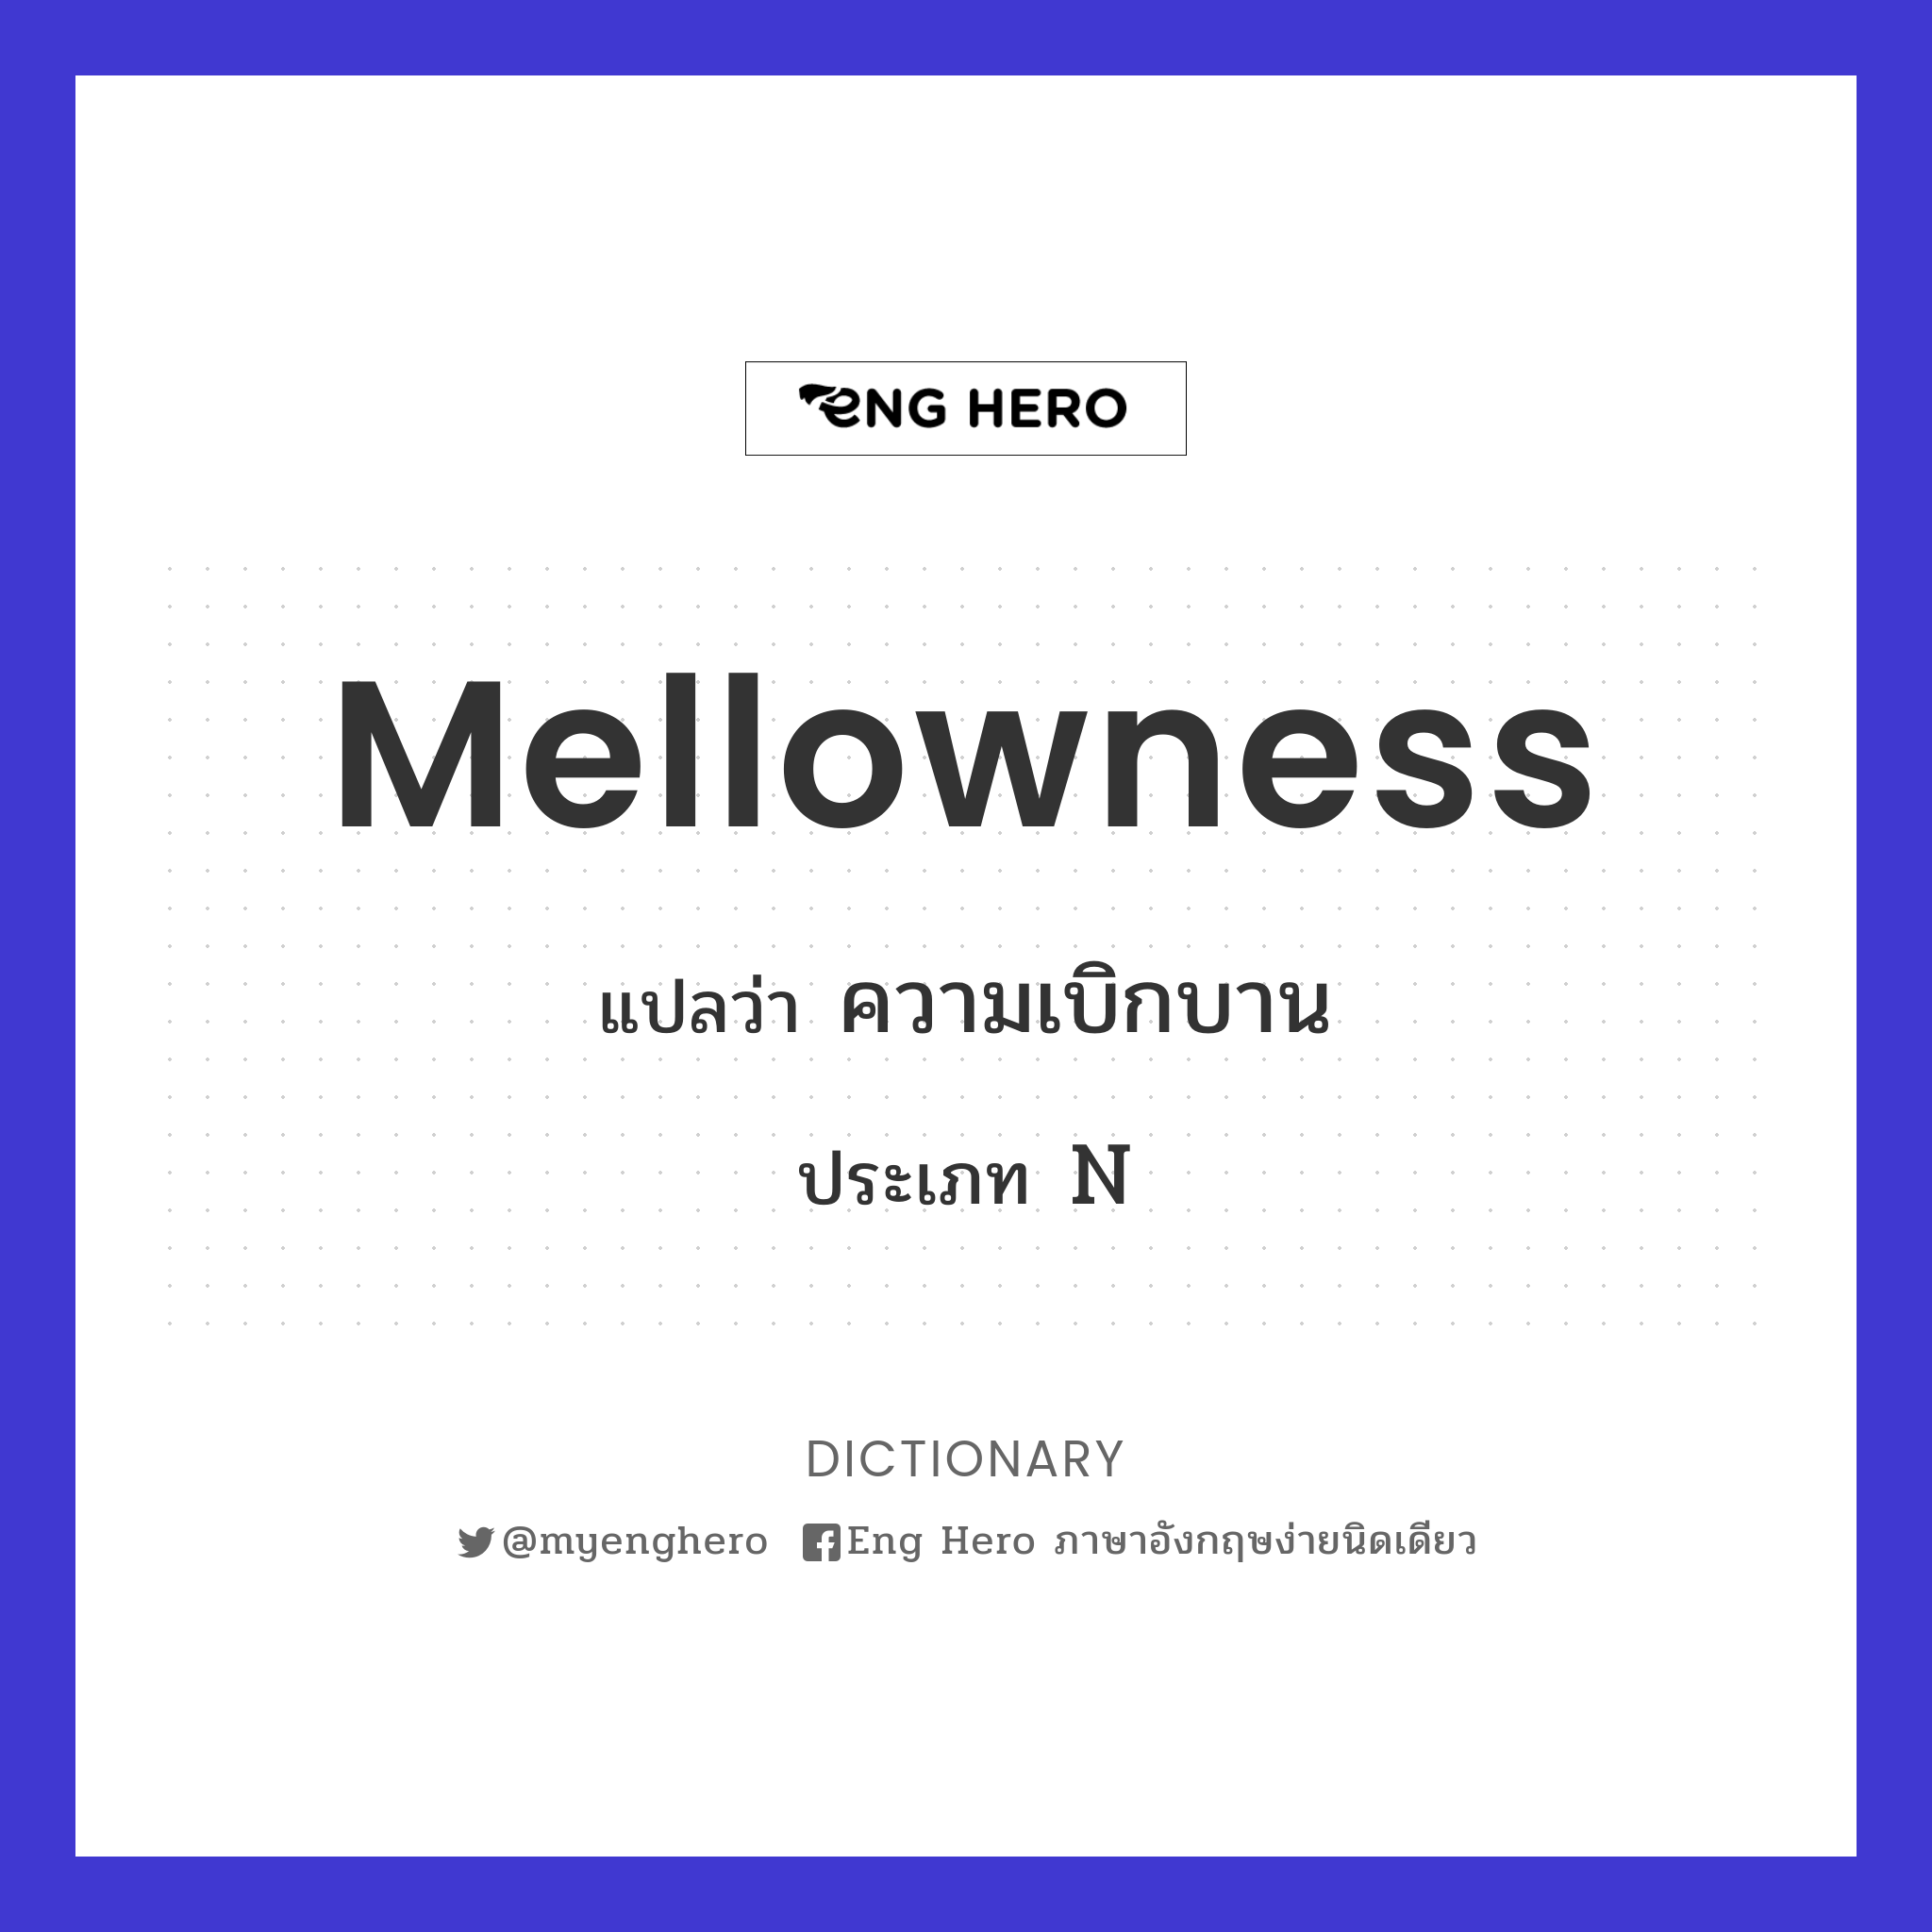 mellowness